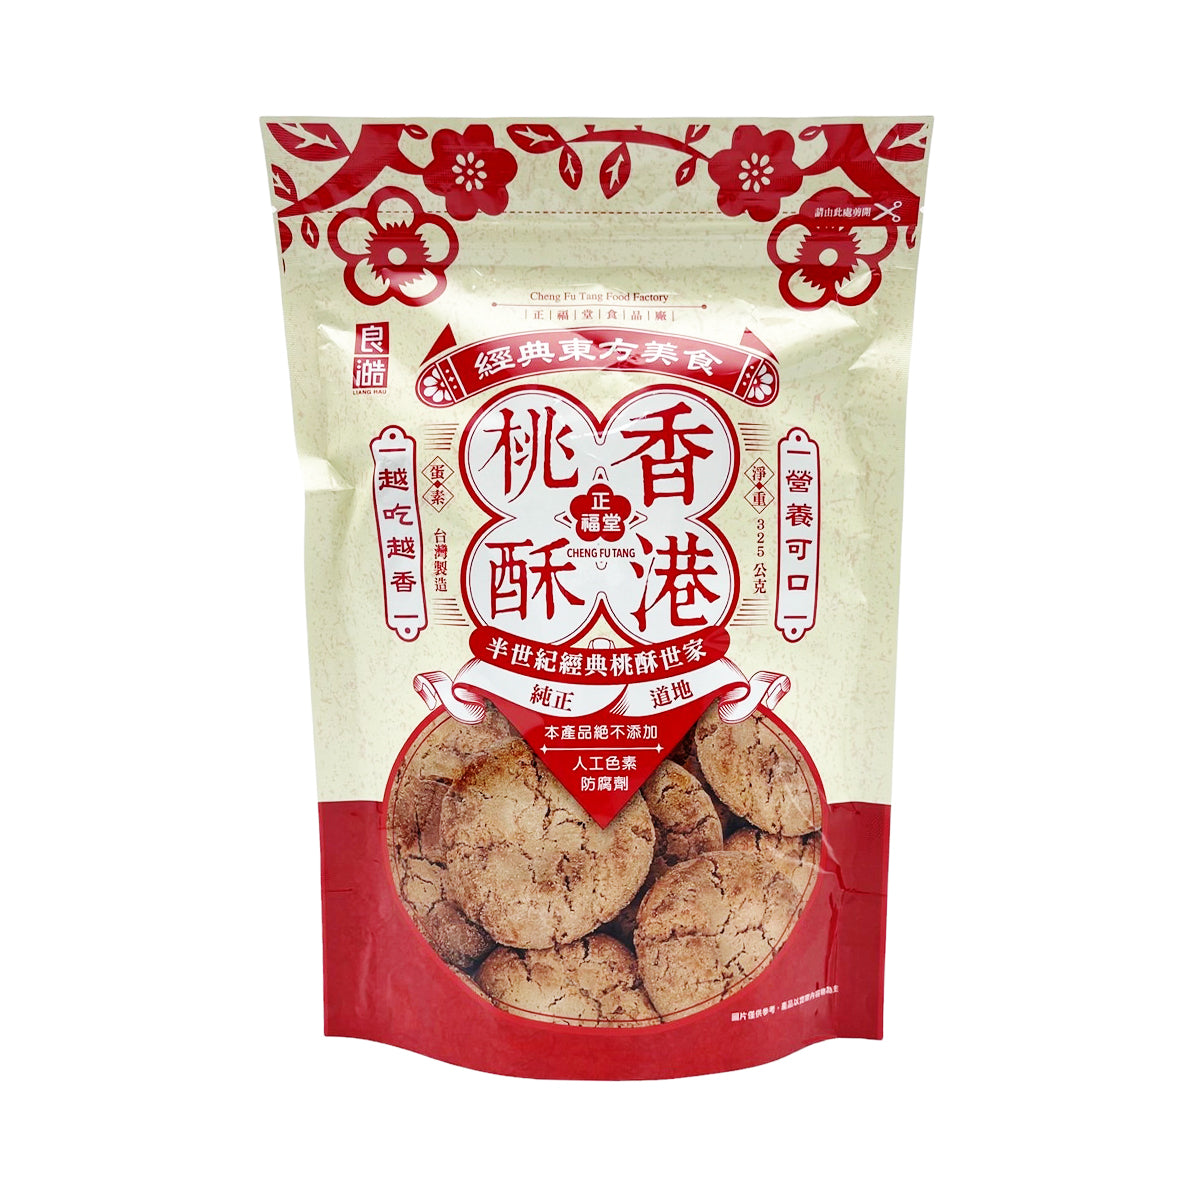 【CHENG FU TANG】 Crisp Cookies-Original 325g